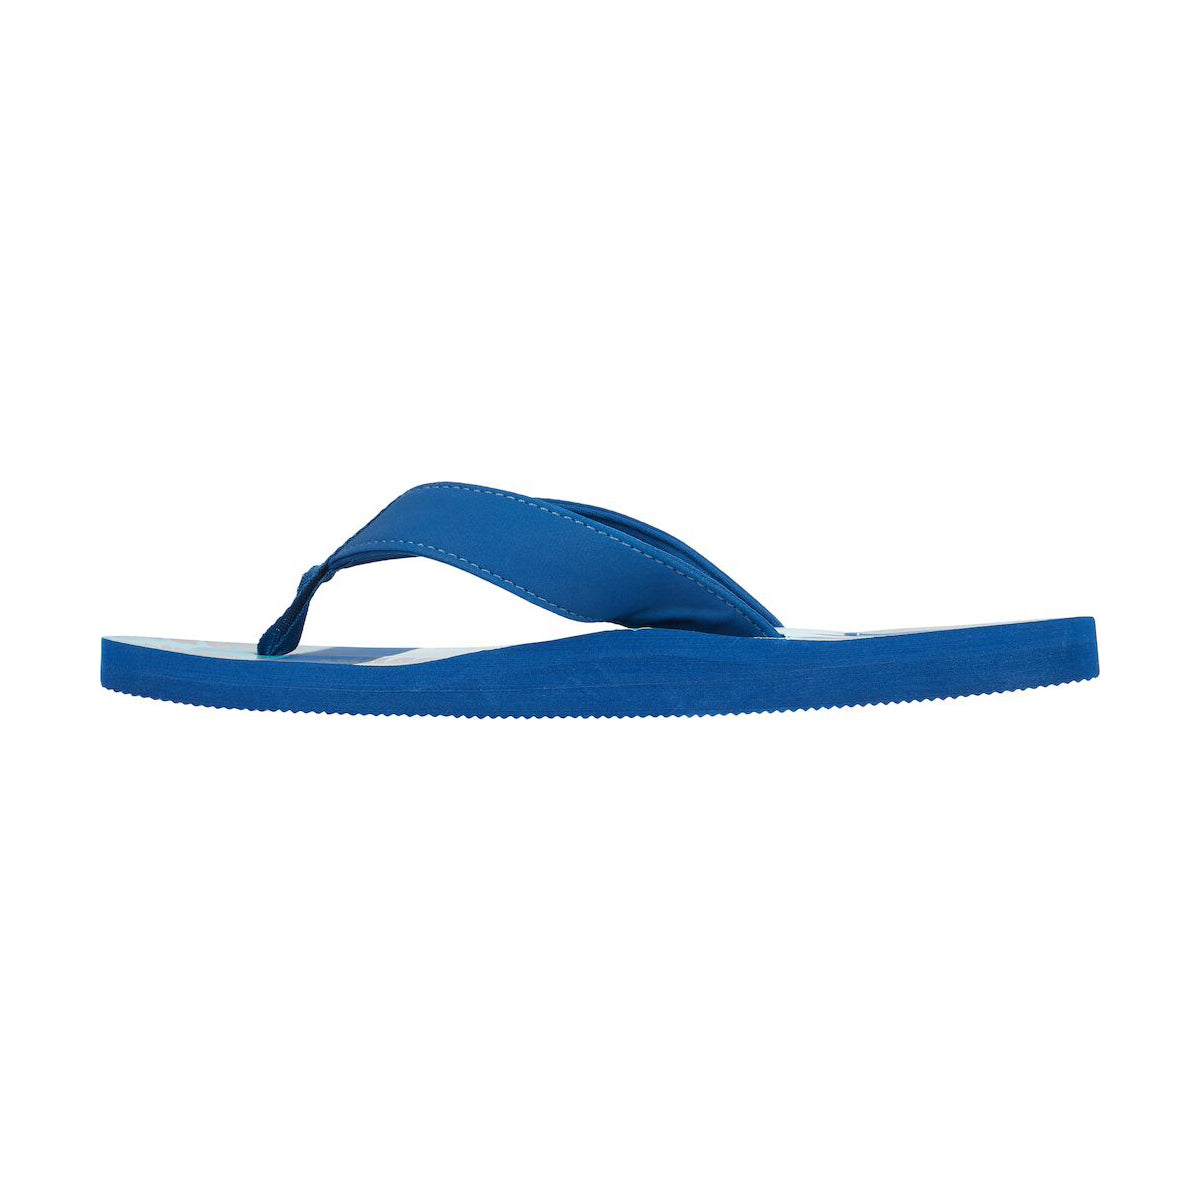 Firefly Toledo 10 M Slipper For Men, Blue & Turquoise